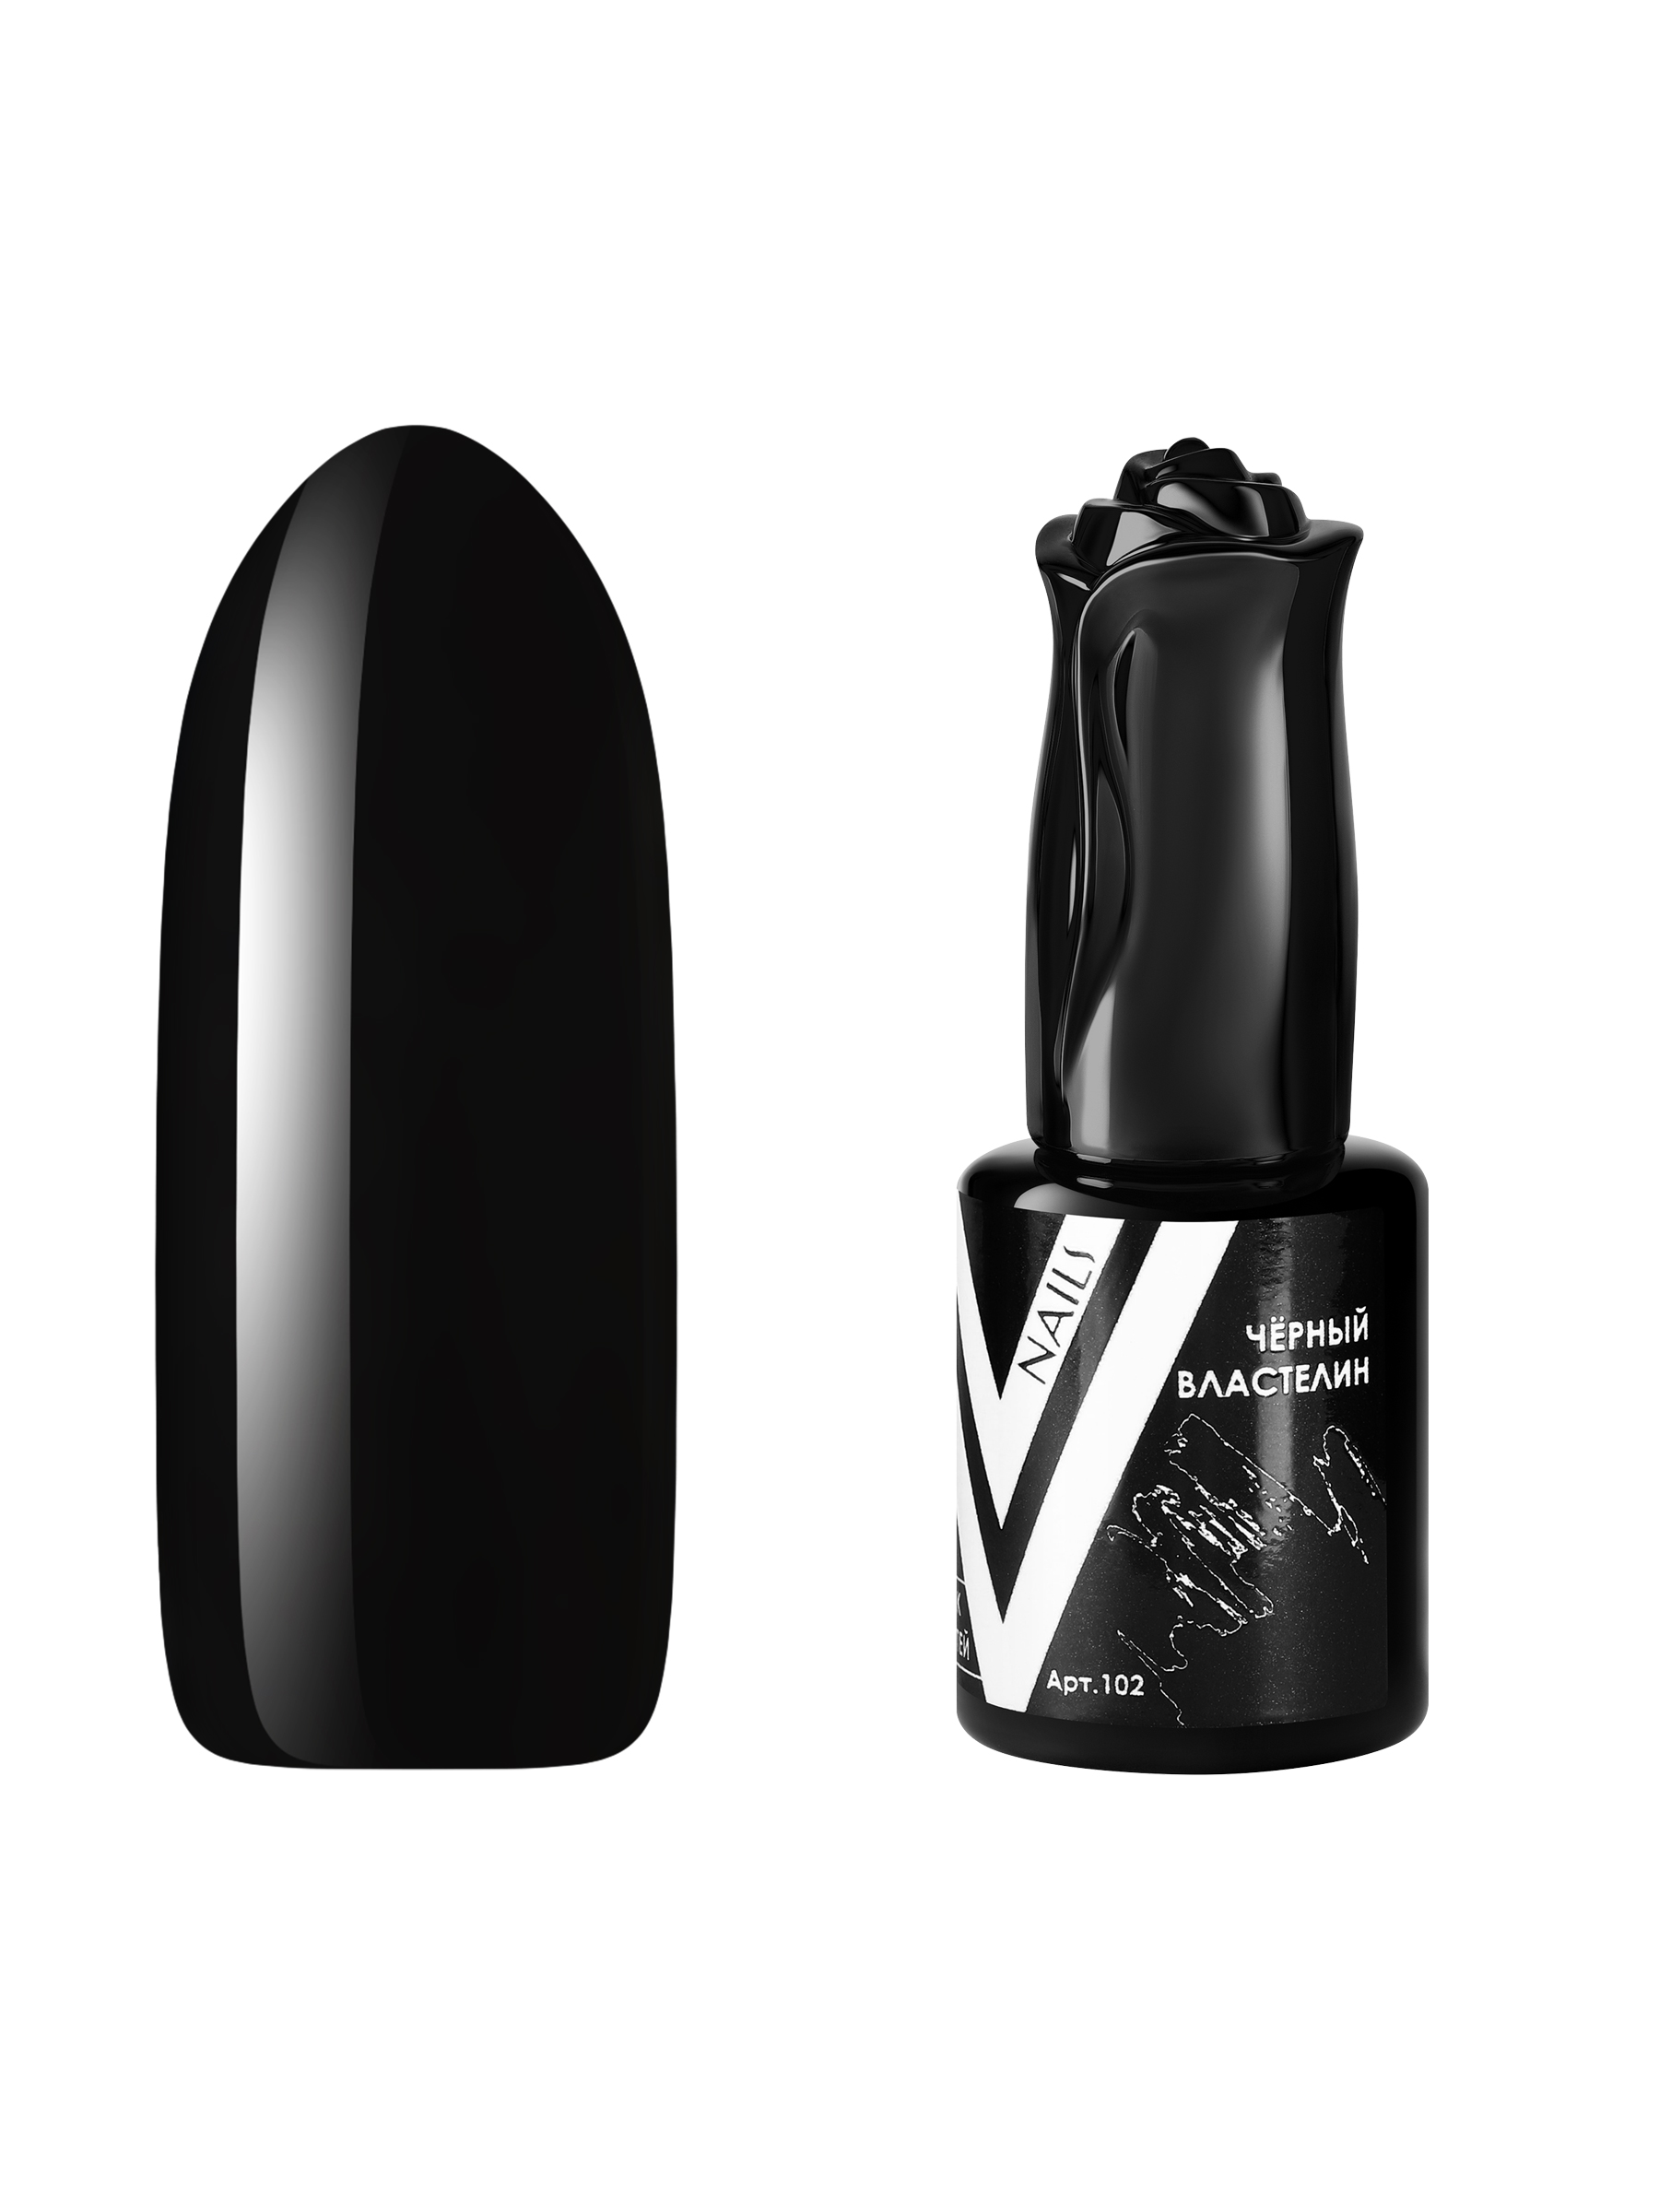 Гель-лак для ногтей Vogue Nails плотный самовыравнивающийся, темный, черный, 10 мл сам себе властелин наследник для калькуары